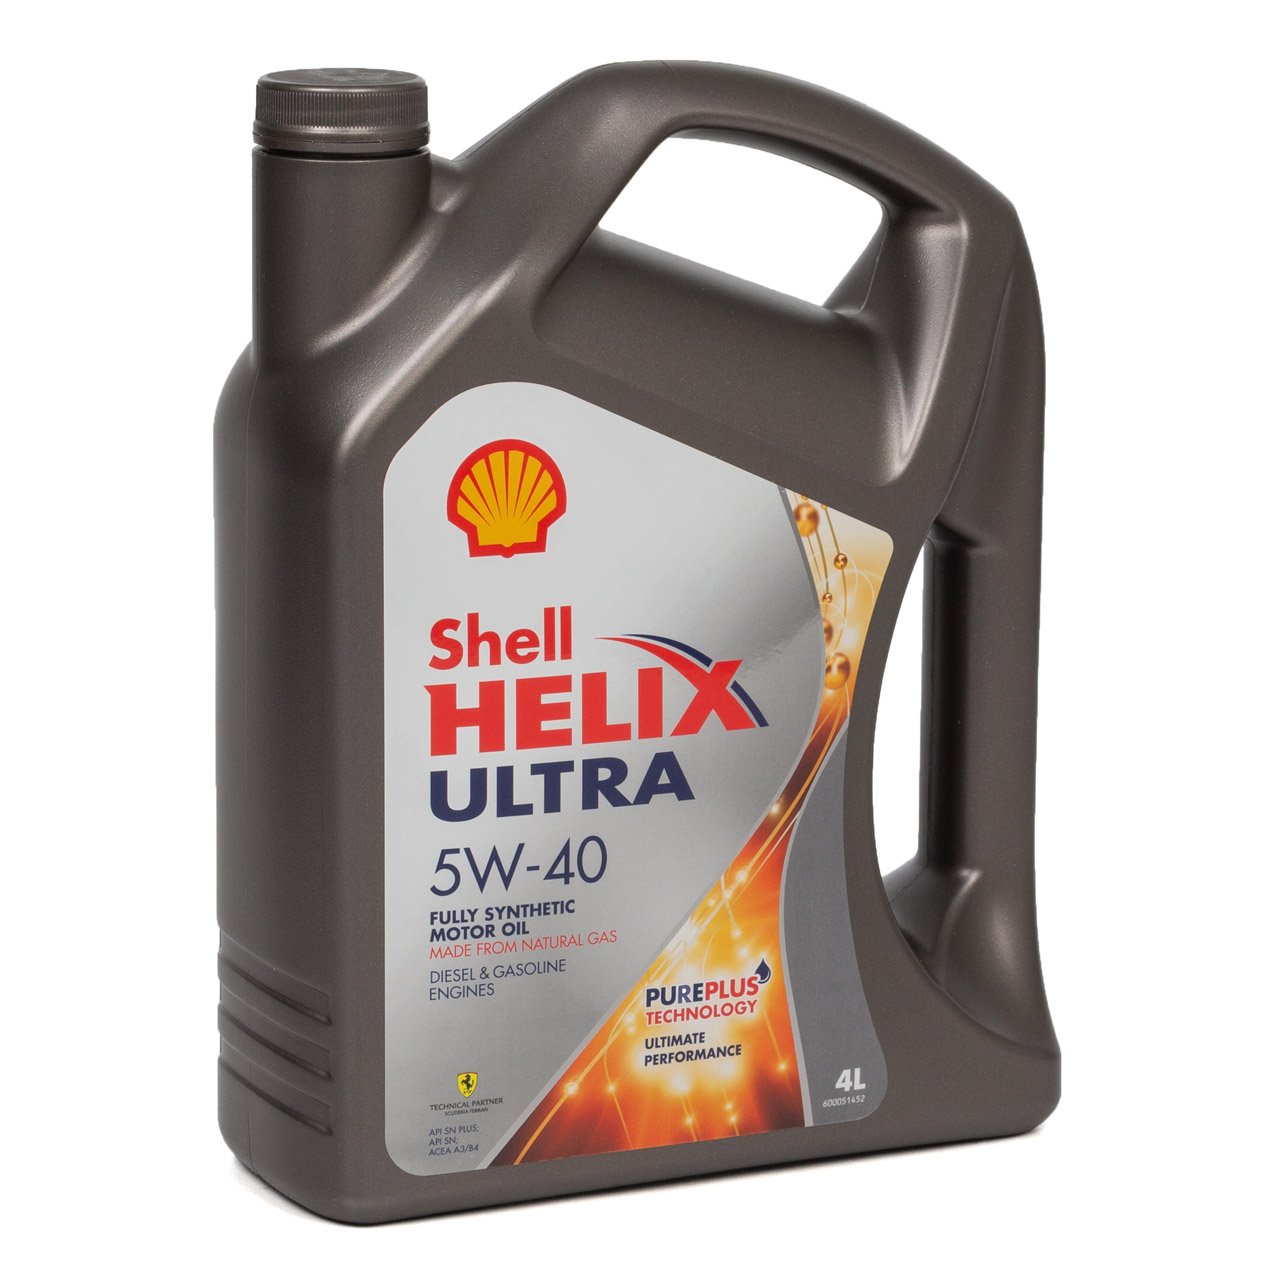 9L 9 Liter SHELL HELIX ULTRA 5W-40 5W40 Motoröl Öl MB 226/229.5 VW 502/505.00